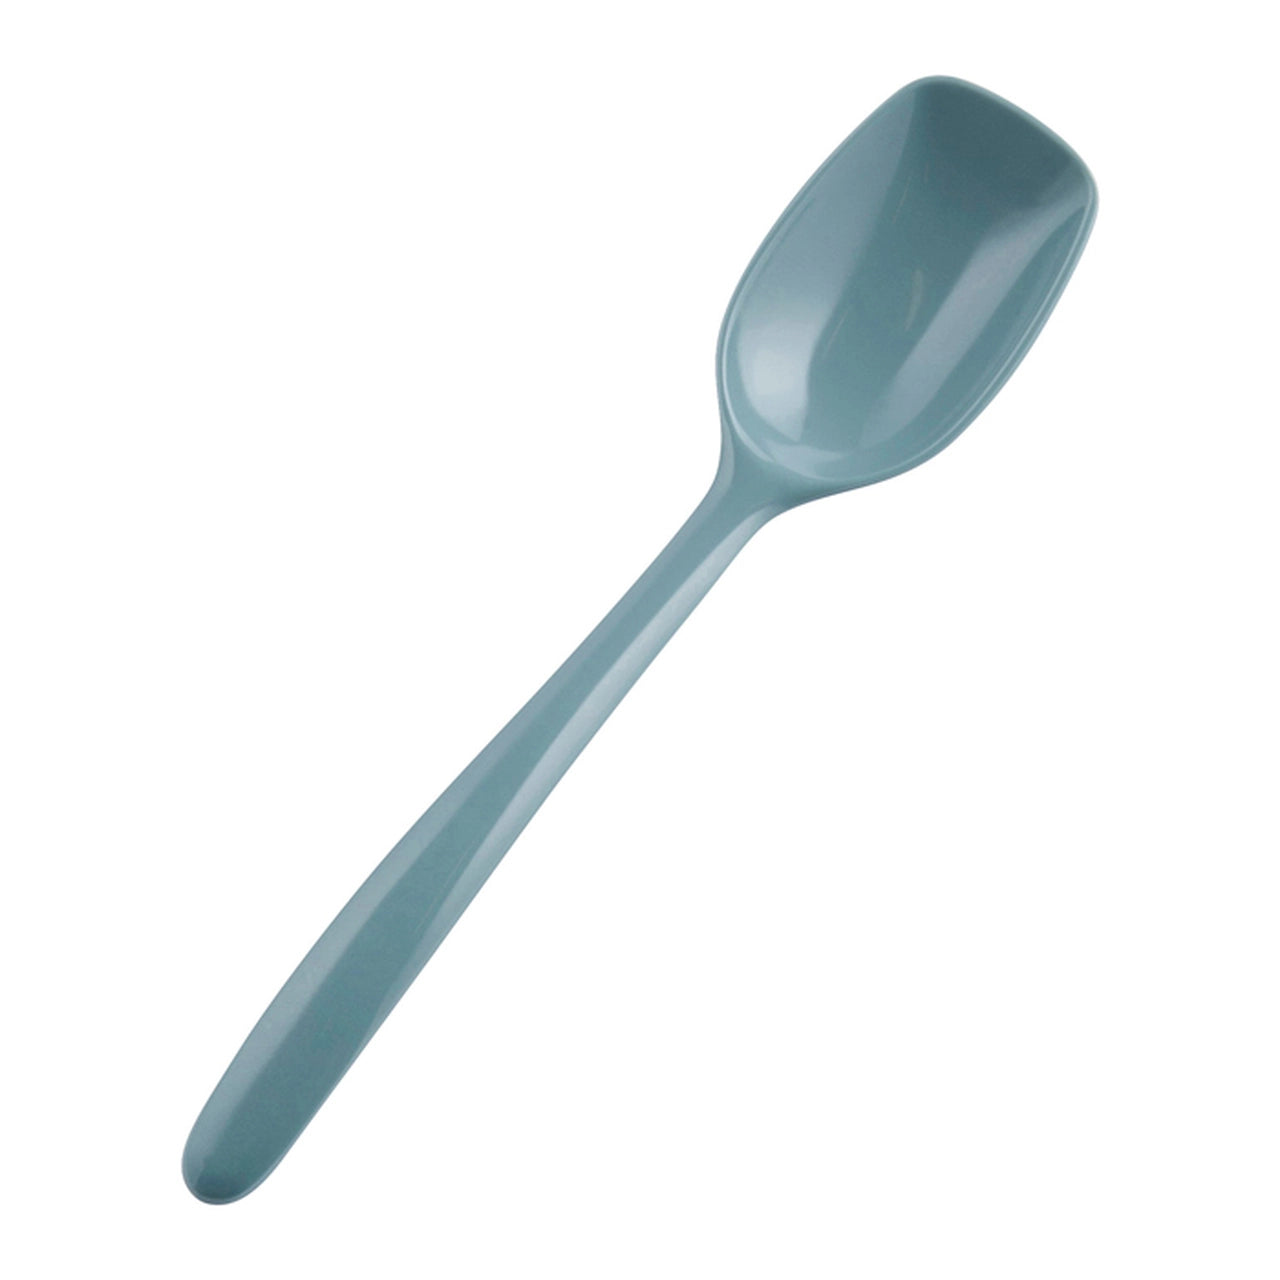 ROSTI MEPAL Melamine Scoop Spoon - 9 inch